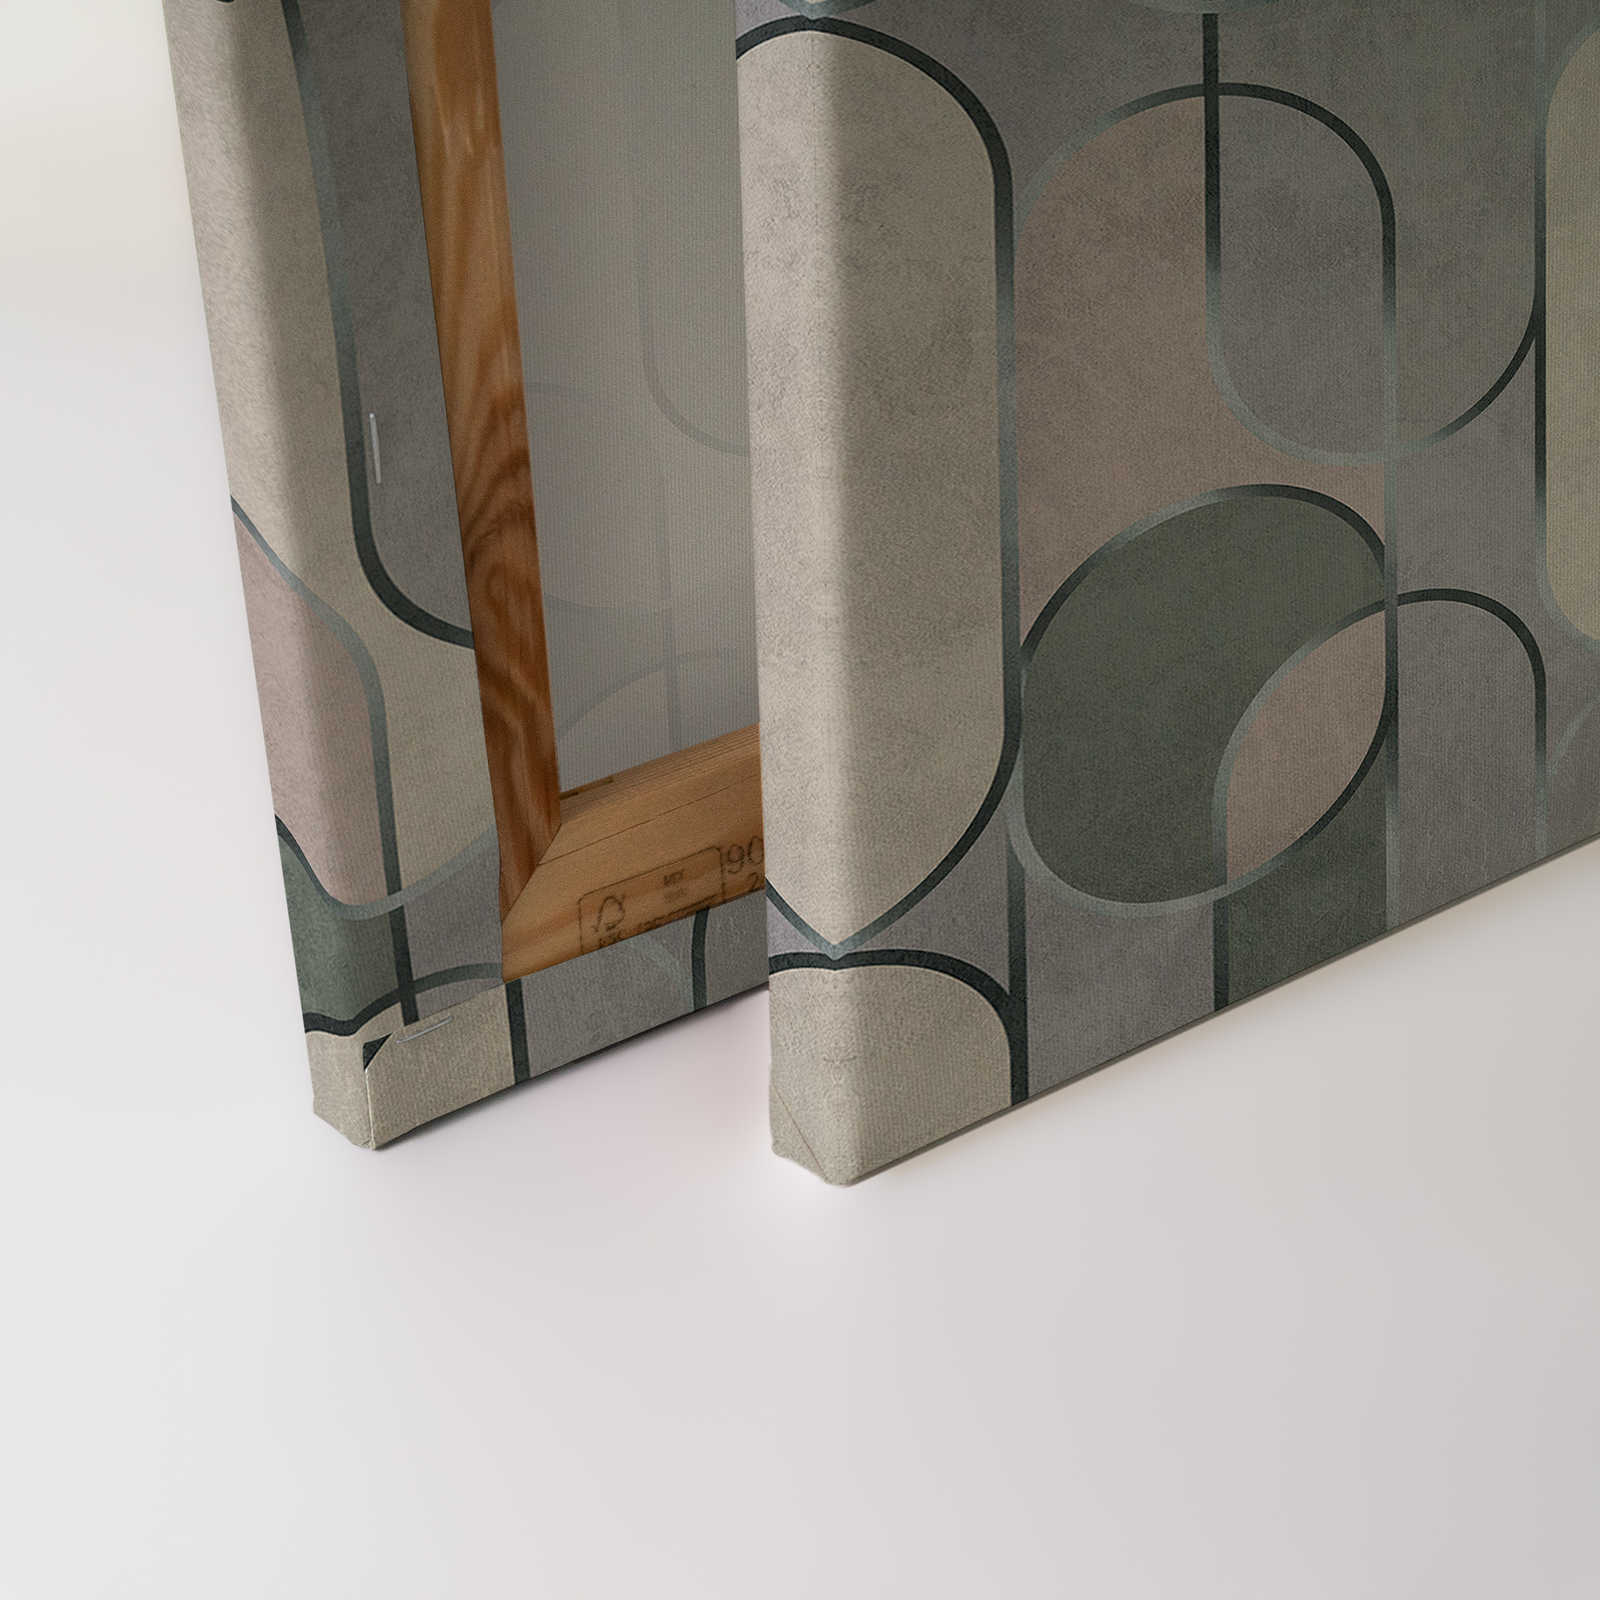             Ritz 2 - toile style rétro, gris & vert avec détails métalliques - 1,20 m x 0,80 m
        